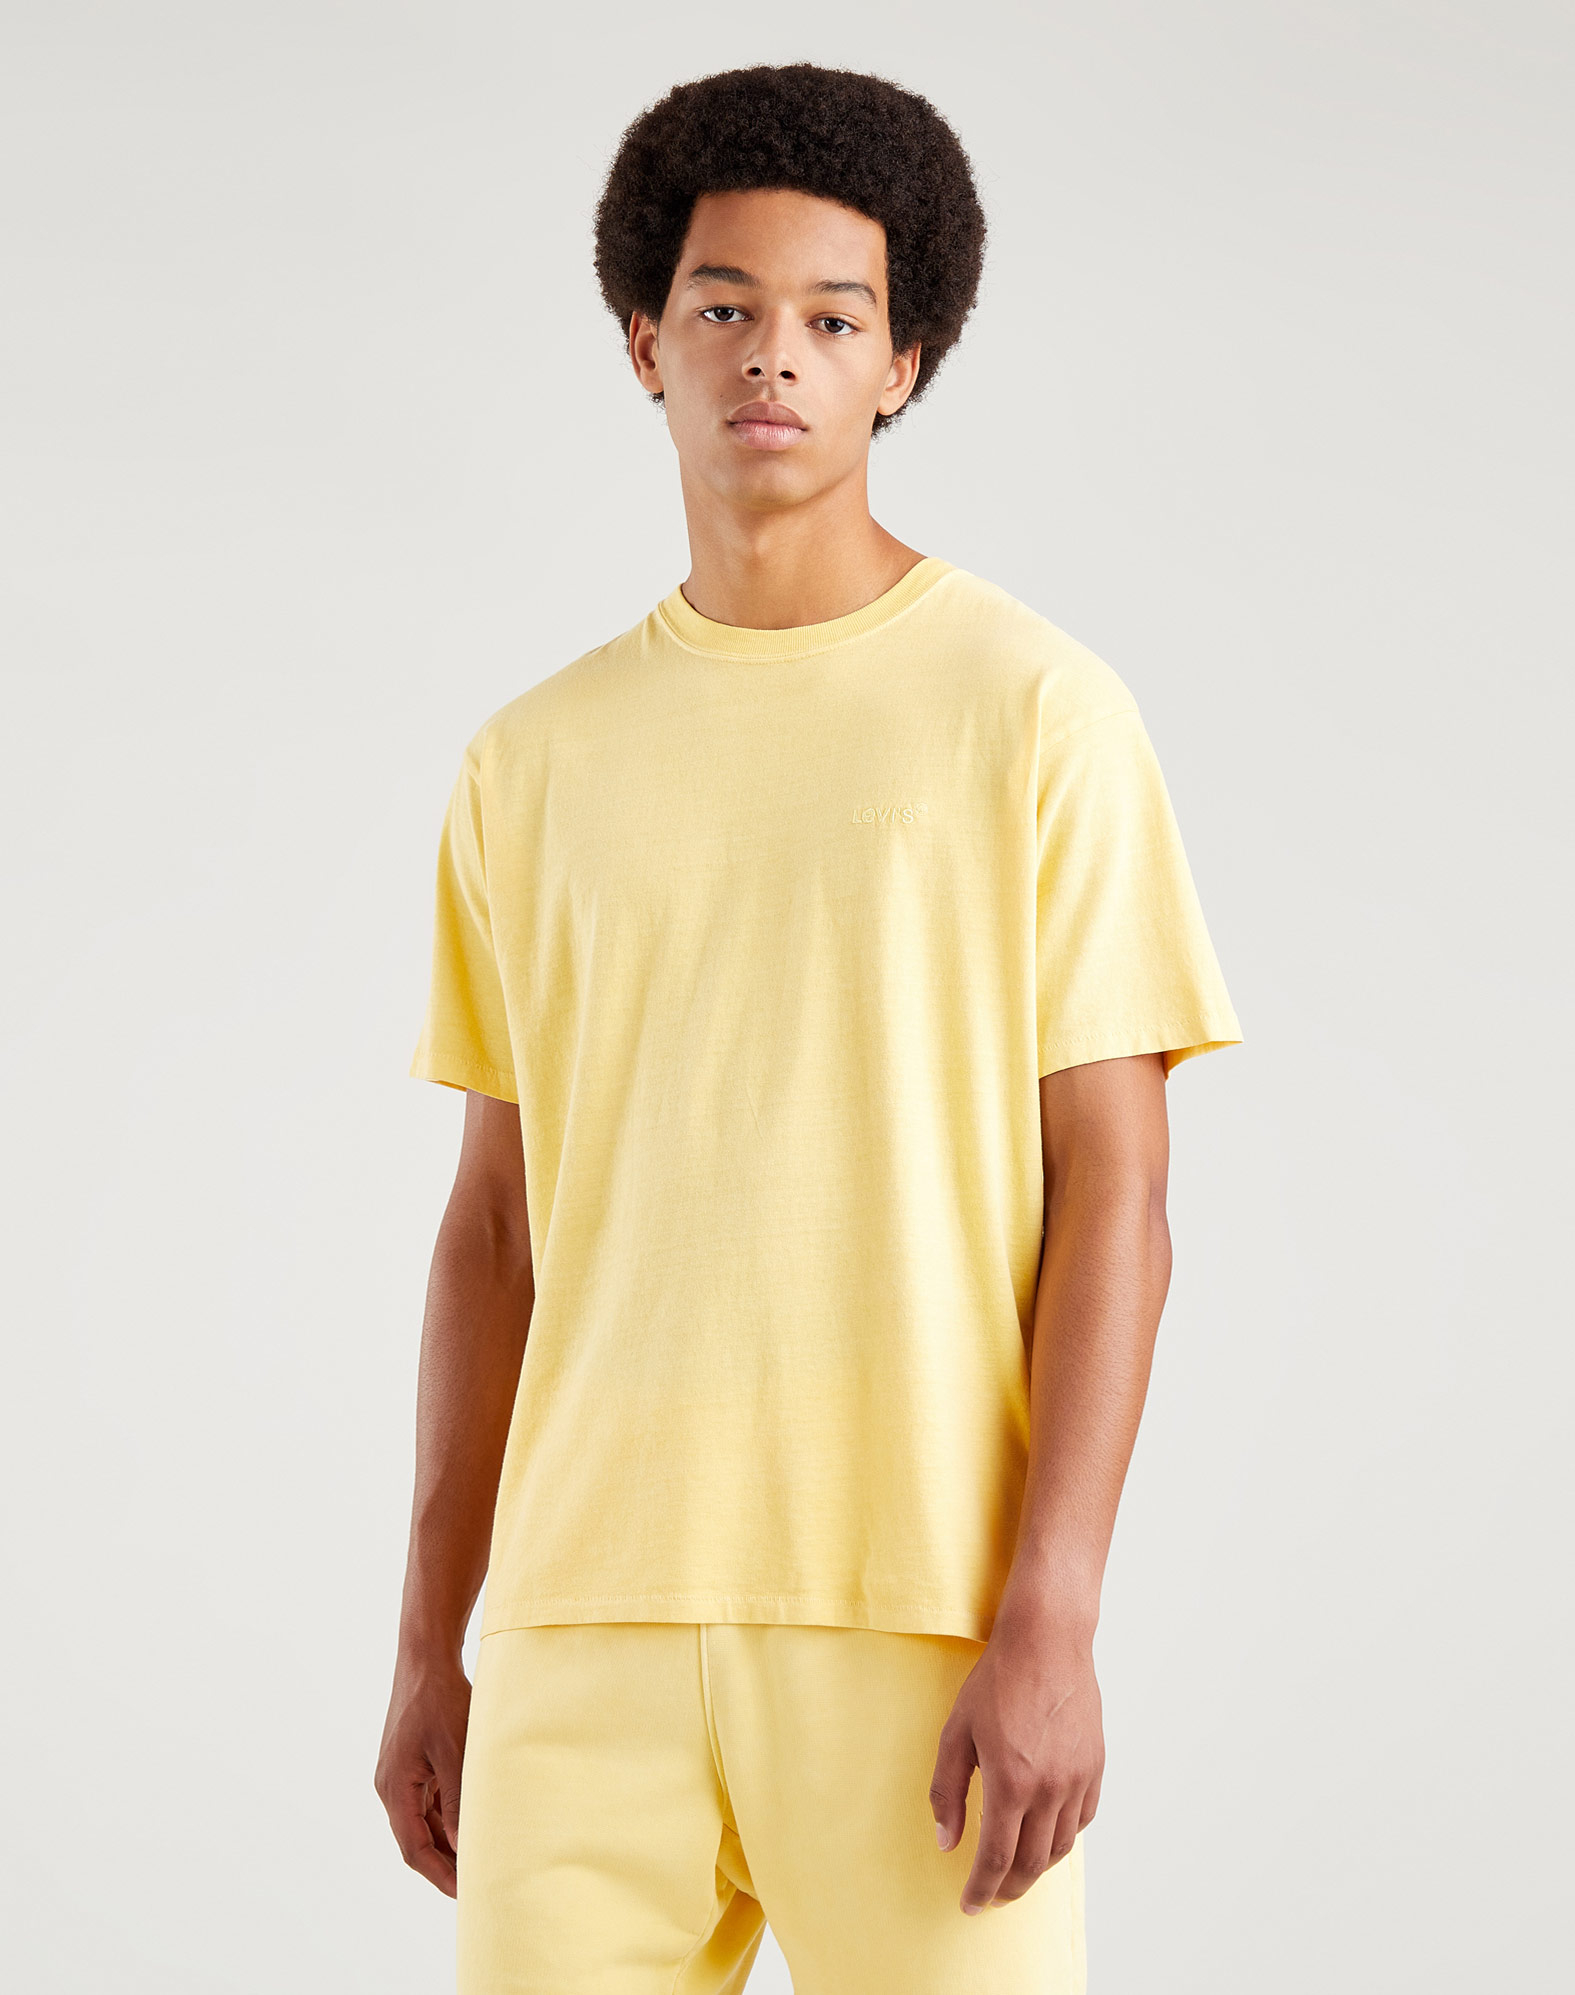 Levi's camiseta de hombre de m/c A0637-0024 amarilla